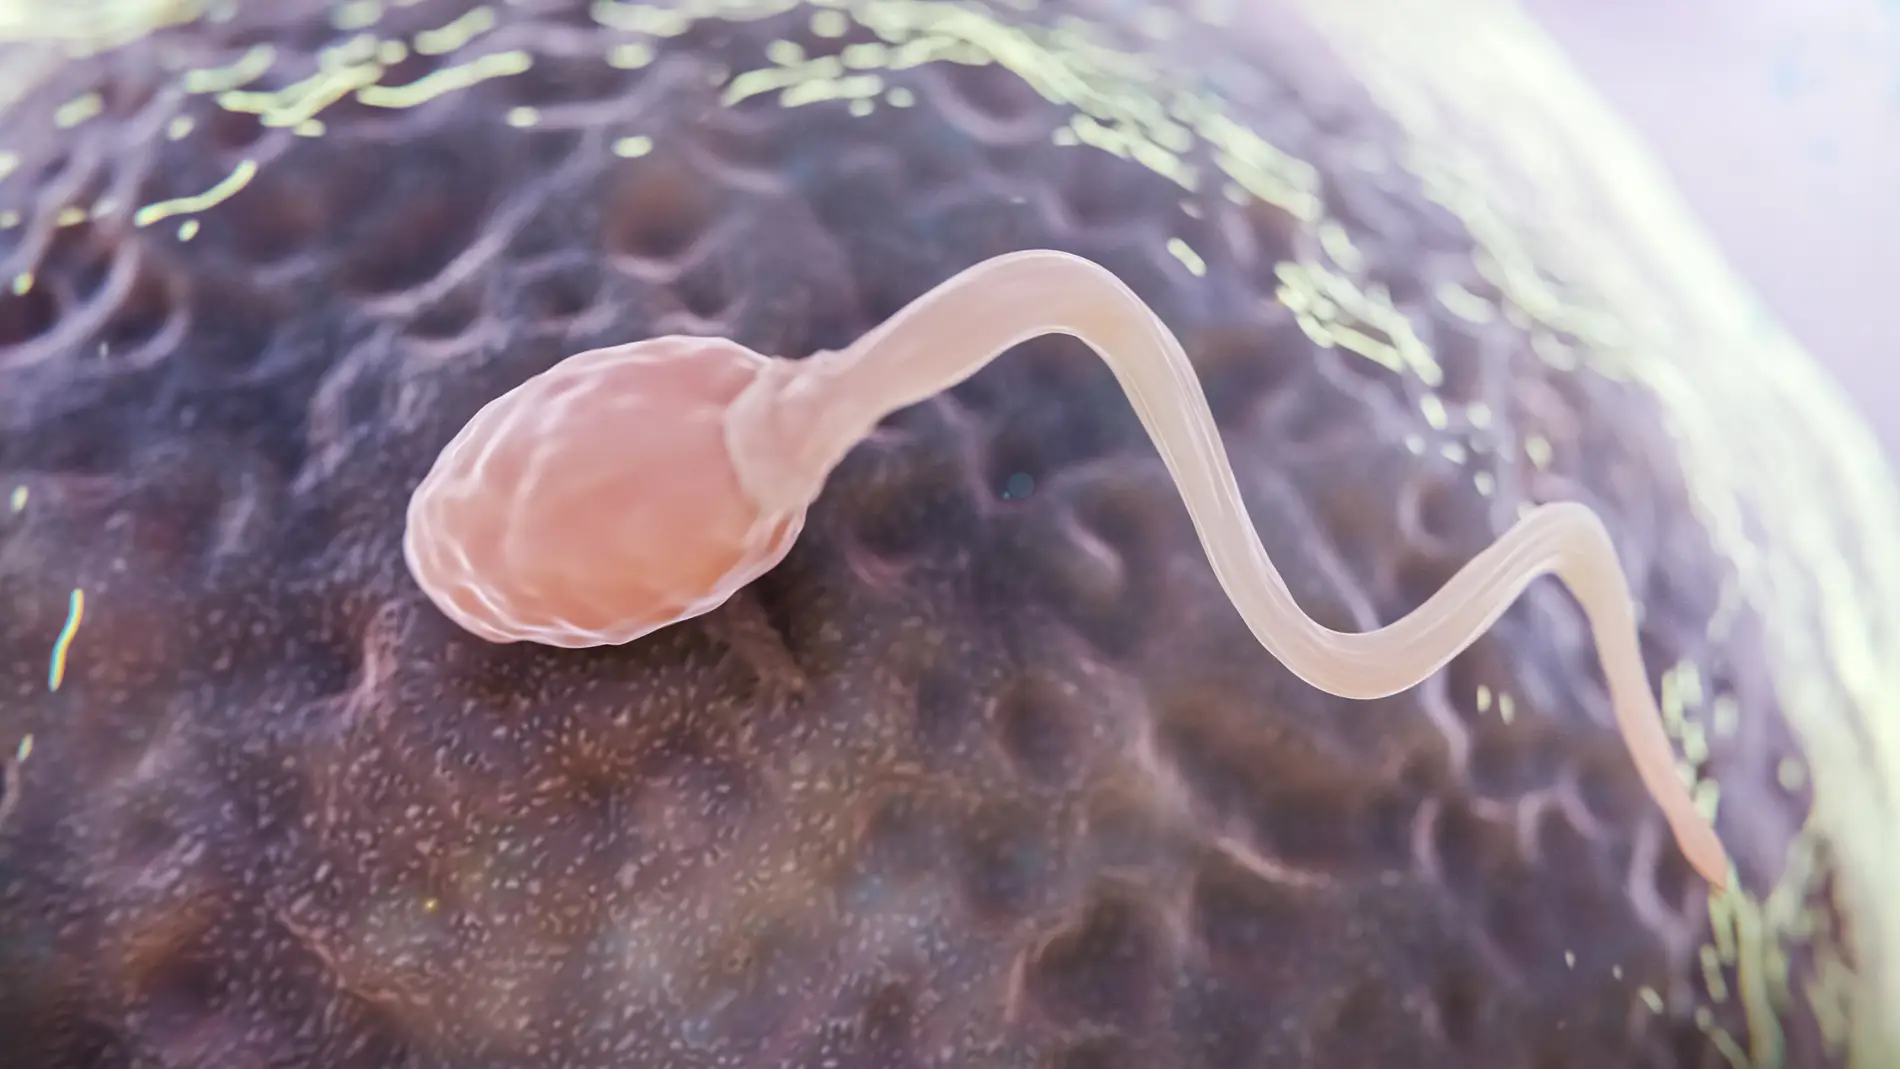 El espermatozoide más rápido no es el que fecunda el óvulo, es un mito de la biología